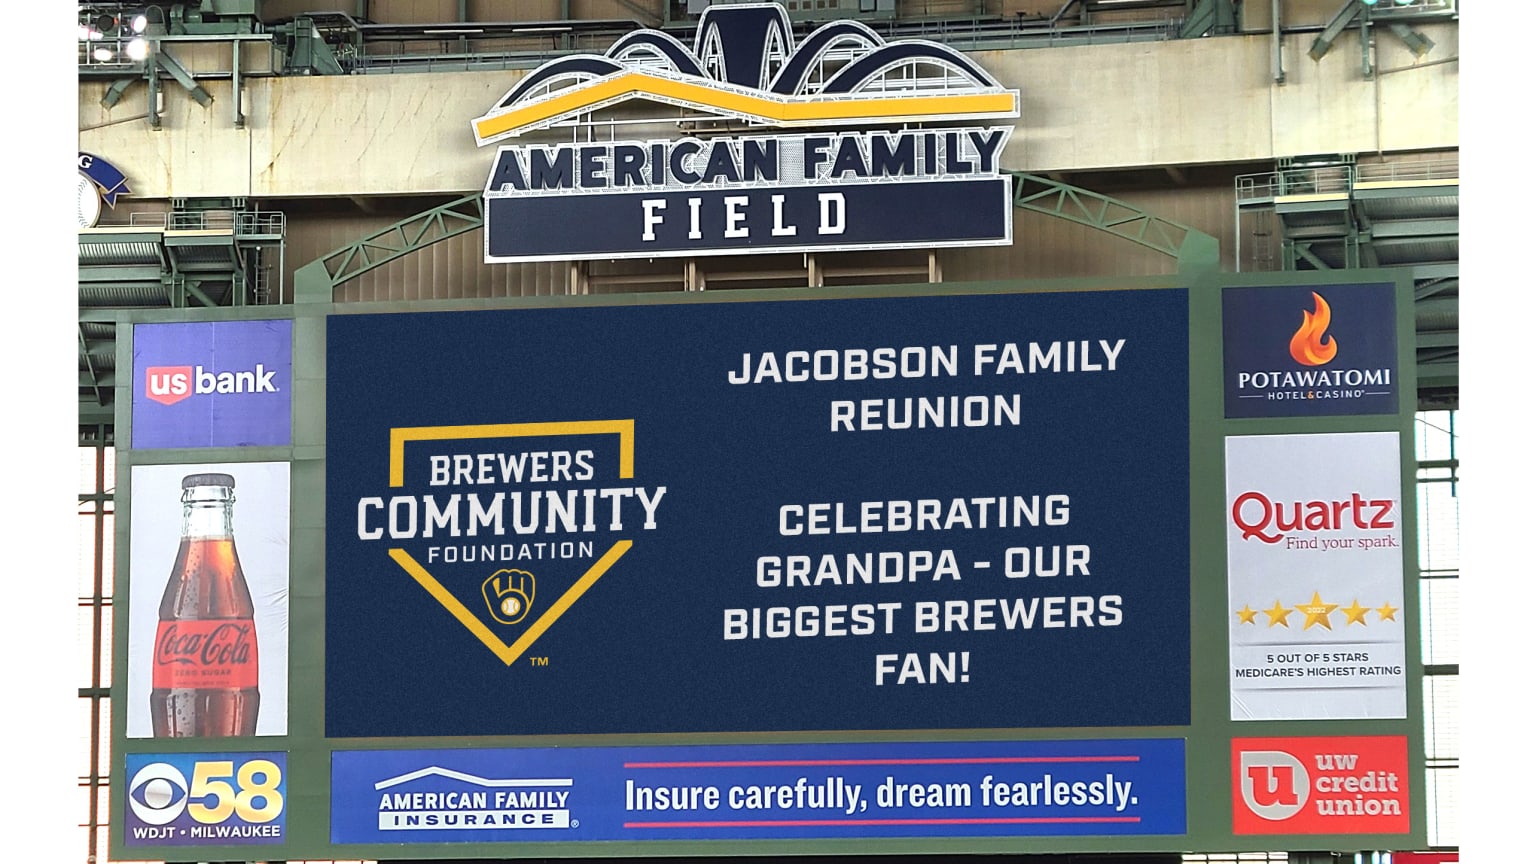 American Family Field will get a new scoreboard next season. It